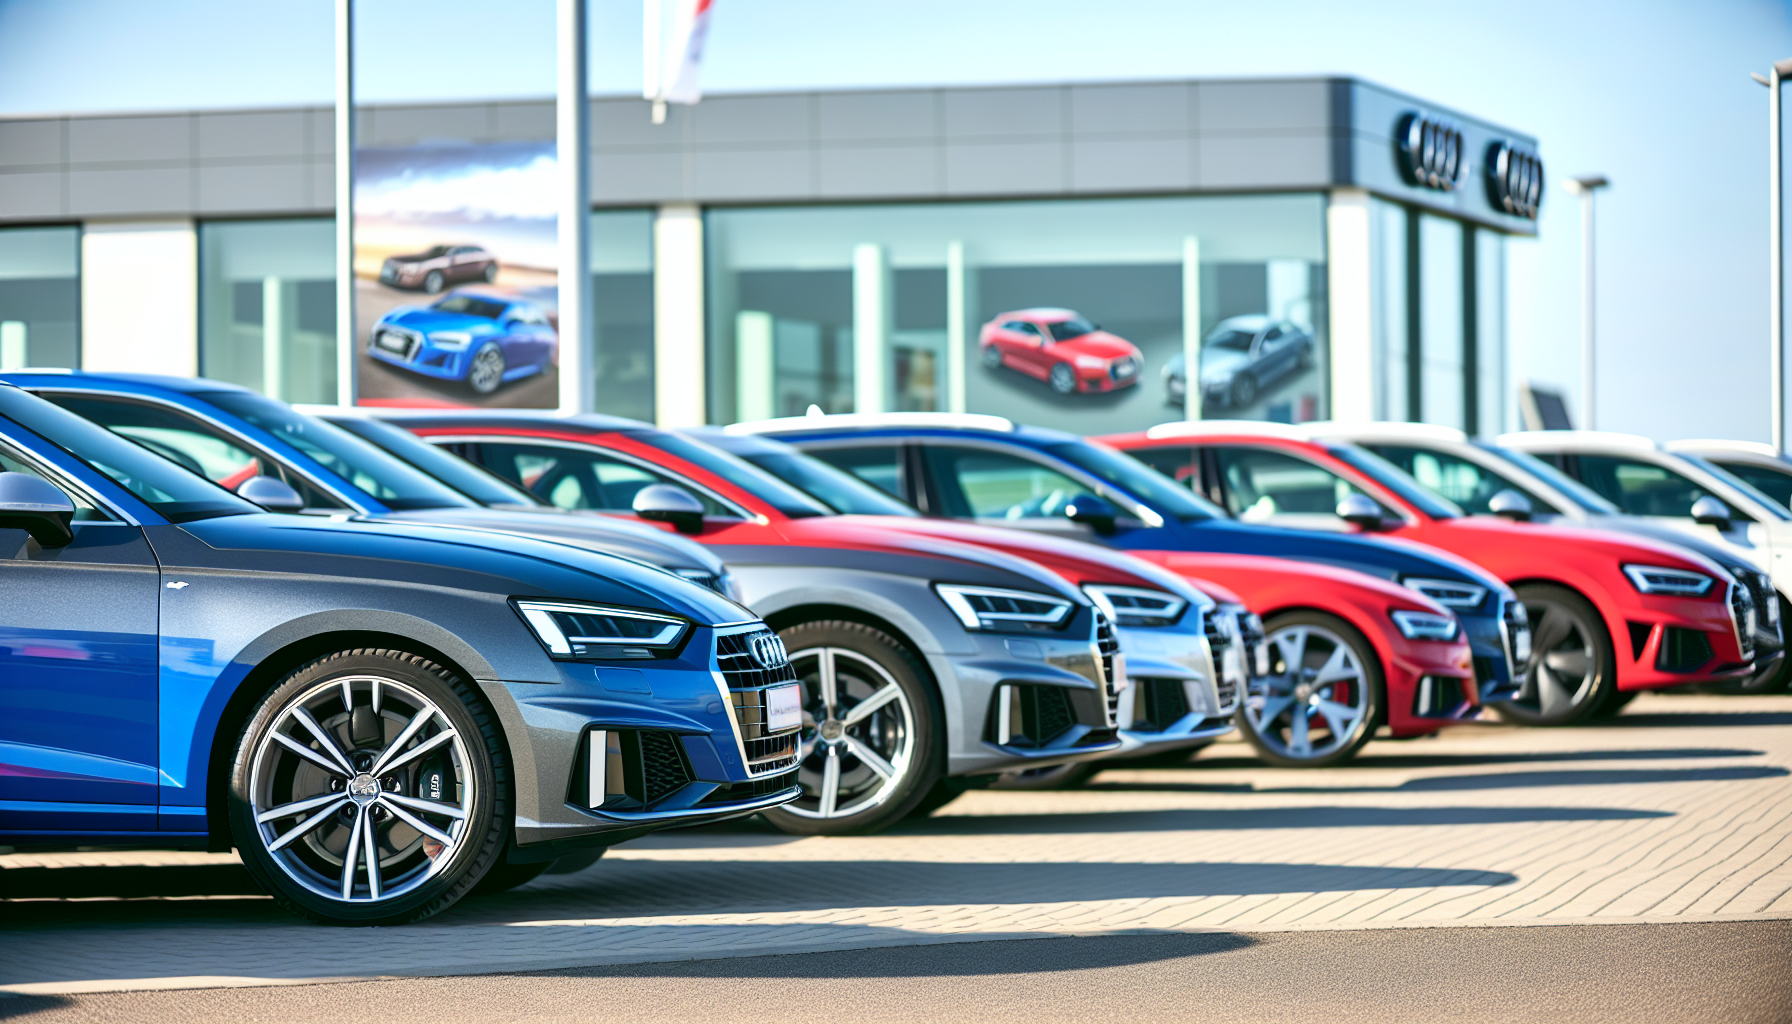 Une variété de véhicules Audi alignés dans une rangée chez un concessionnaire automobile.